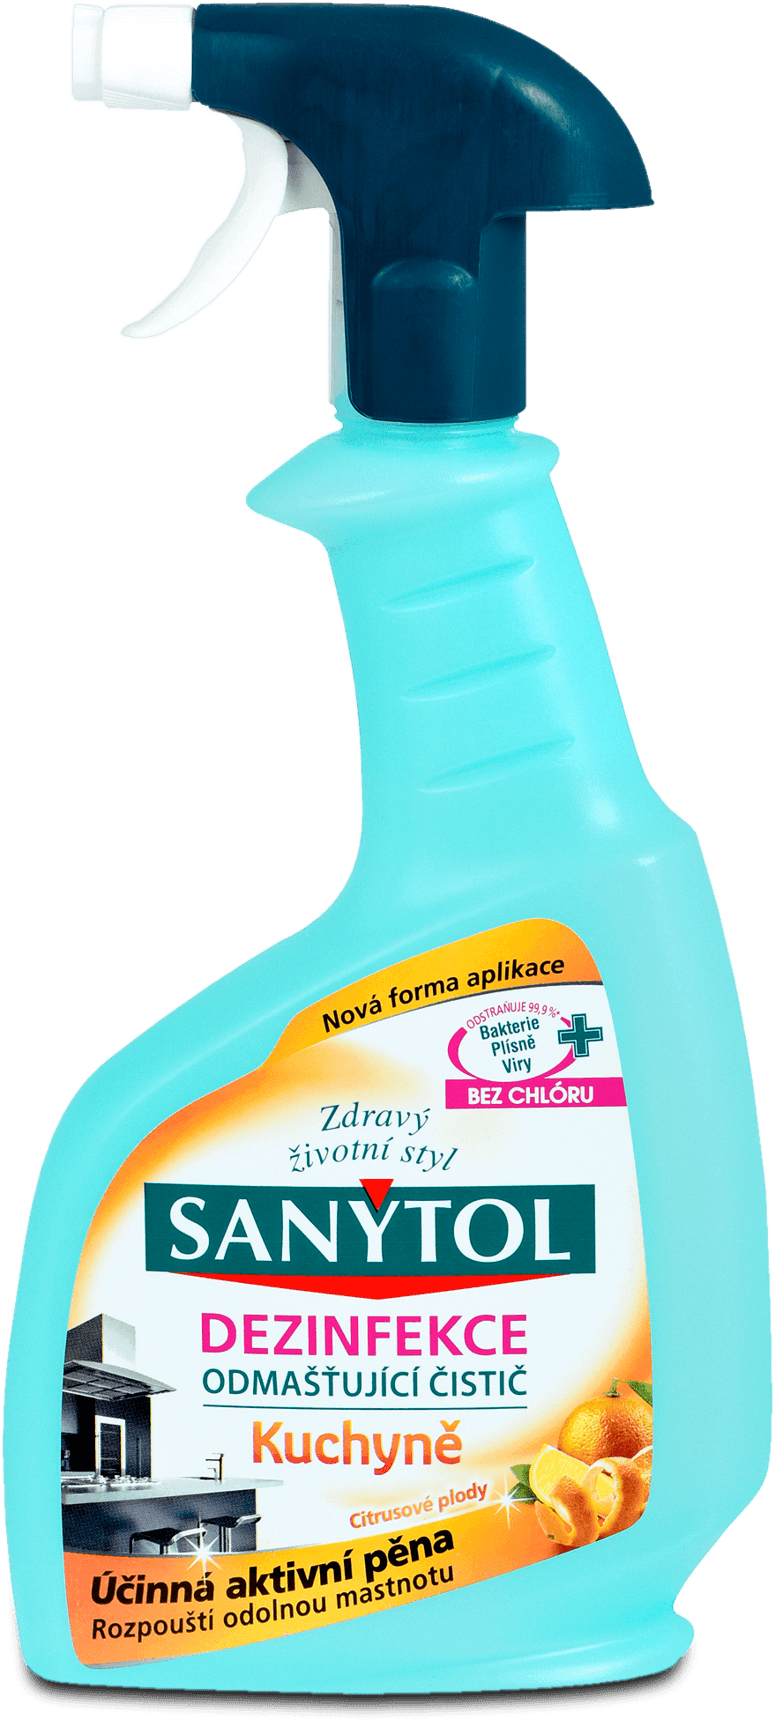 Sanytol - Dezinfekční odmašťující čistič na kuchyně 500 ml